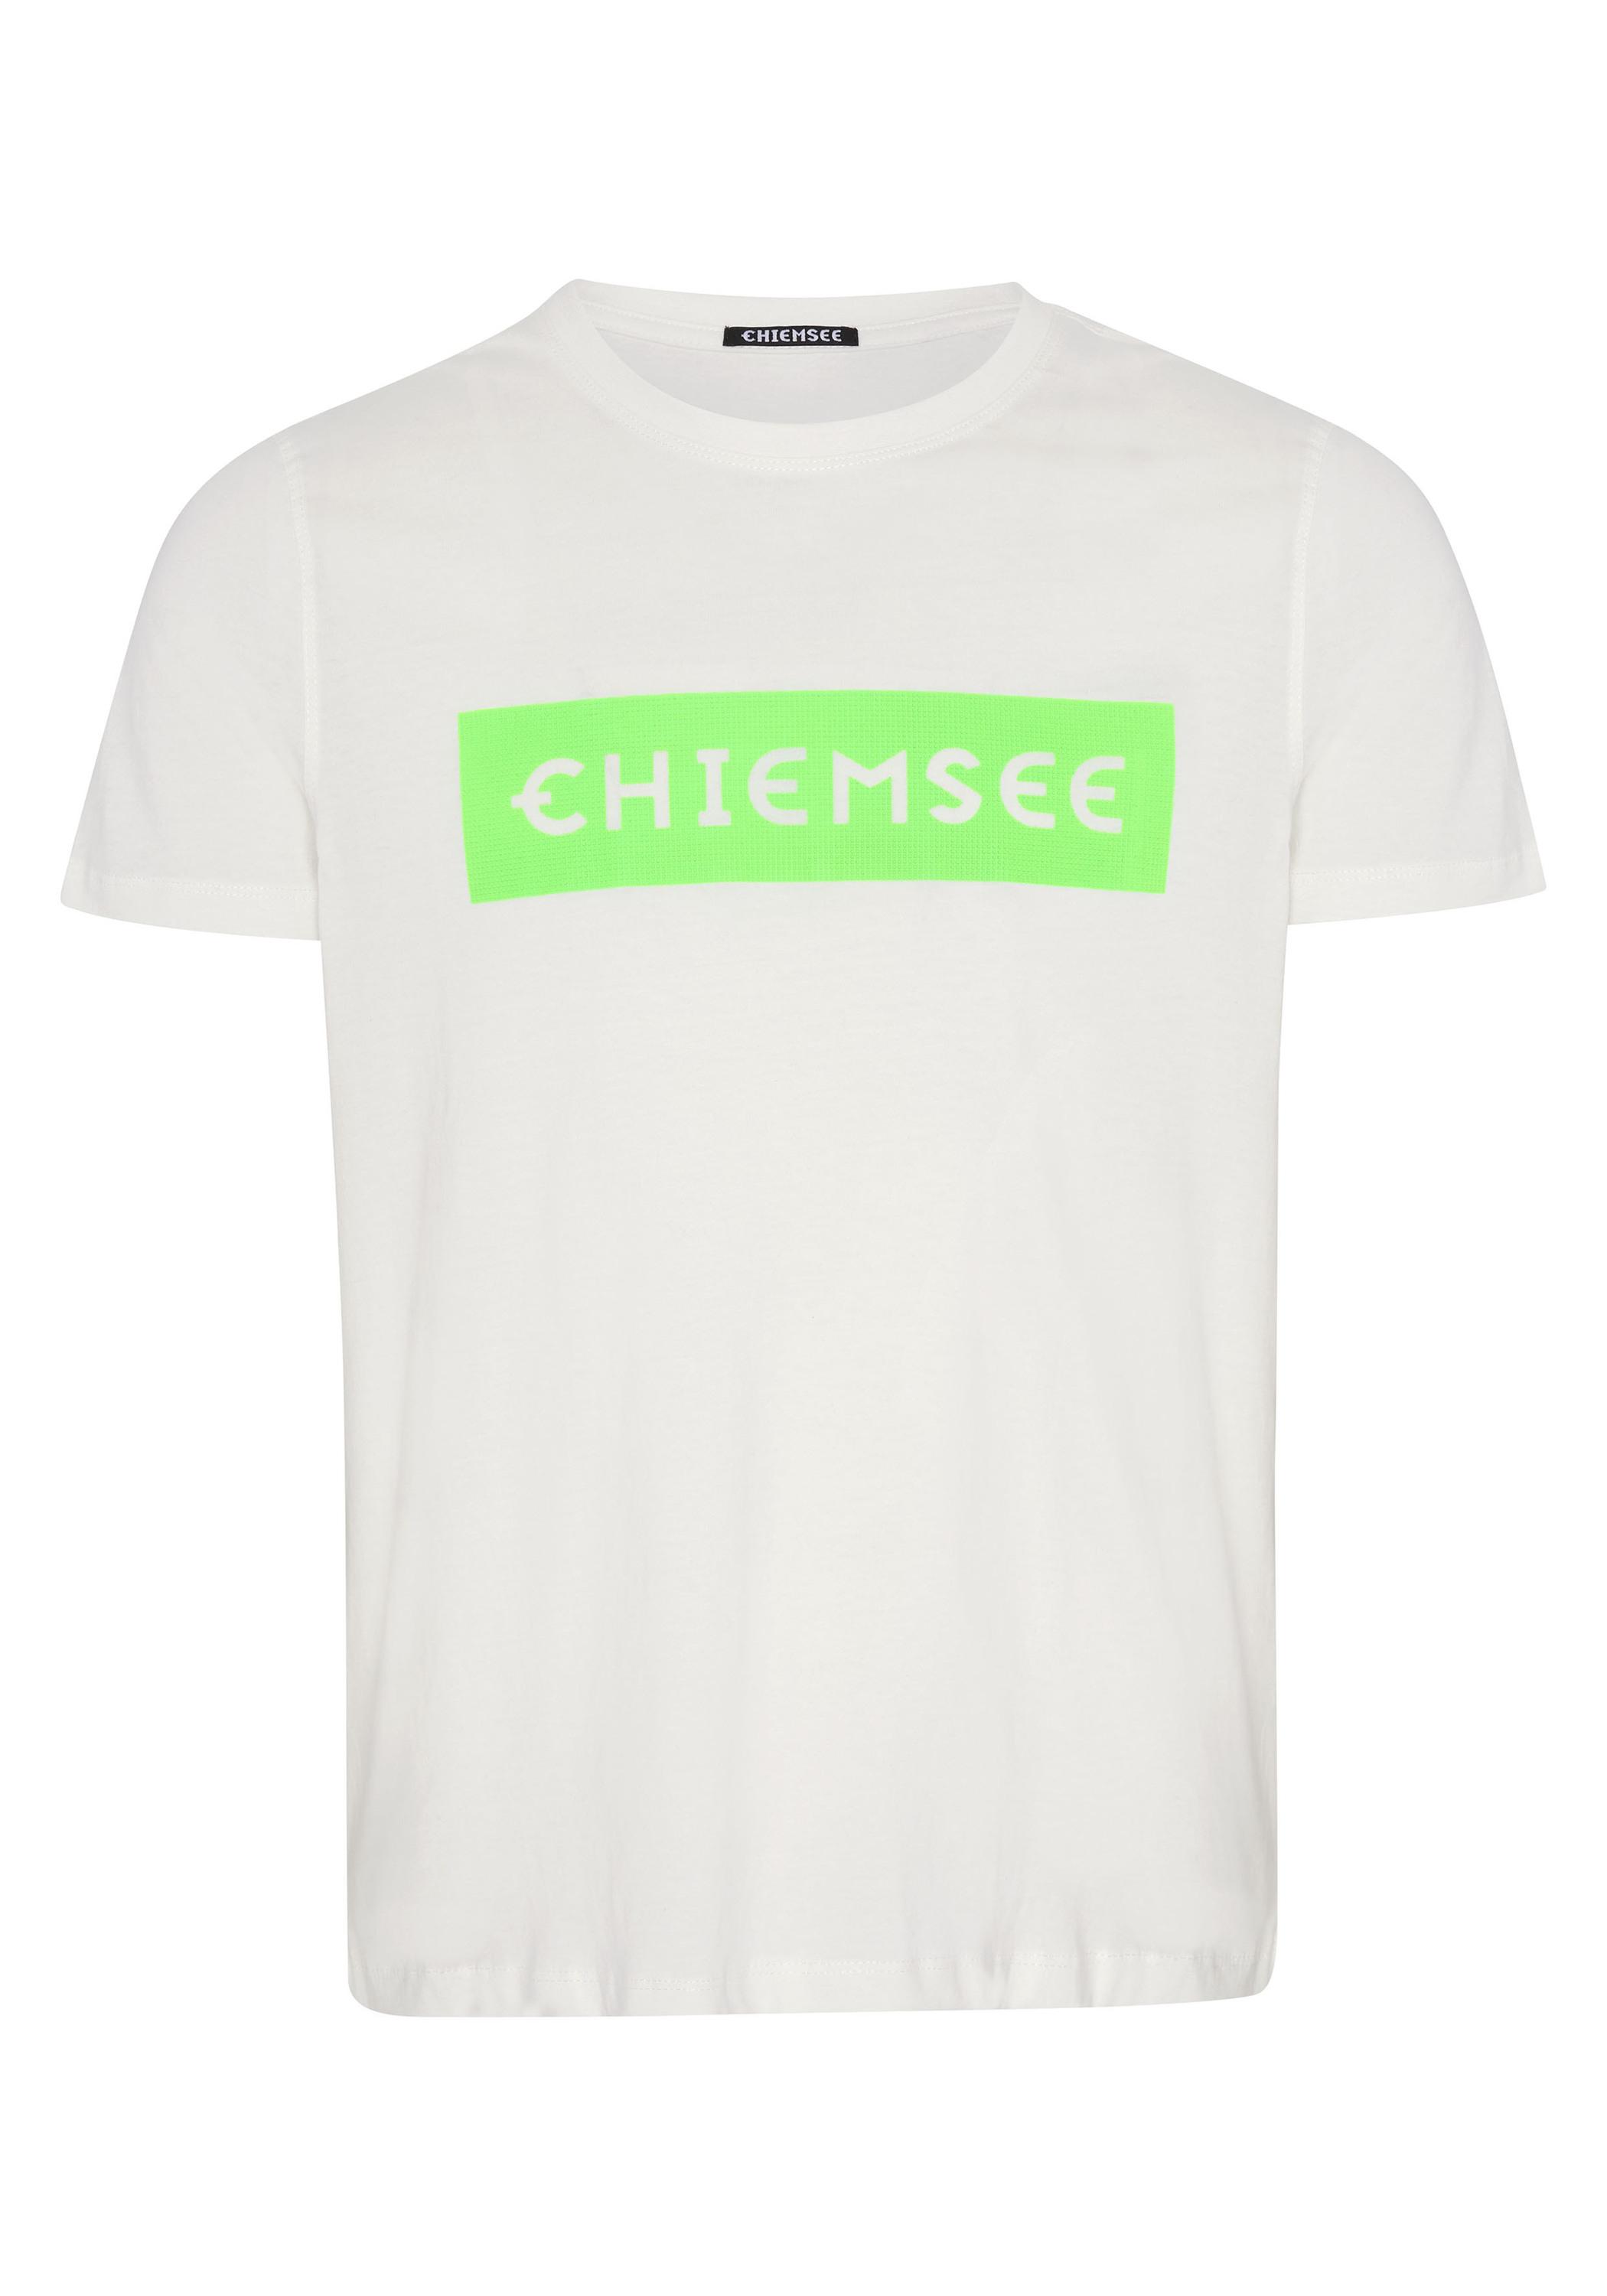 Chiemsee T-Shirt T-Shirt Herren Grn Wht/Md SportScheck Dif kaufen Online von im Shop